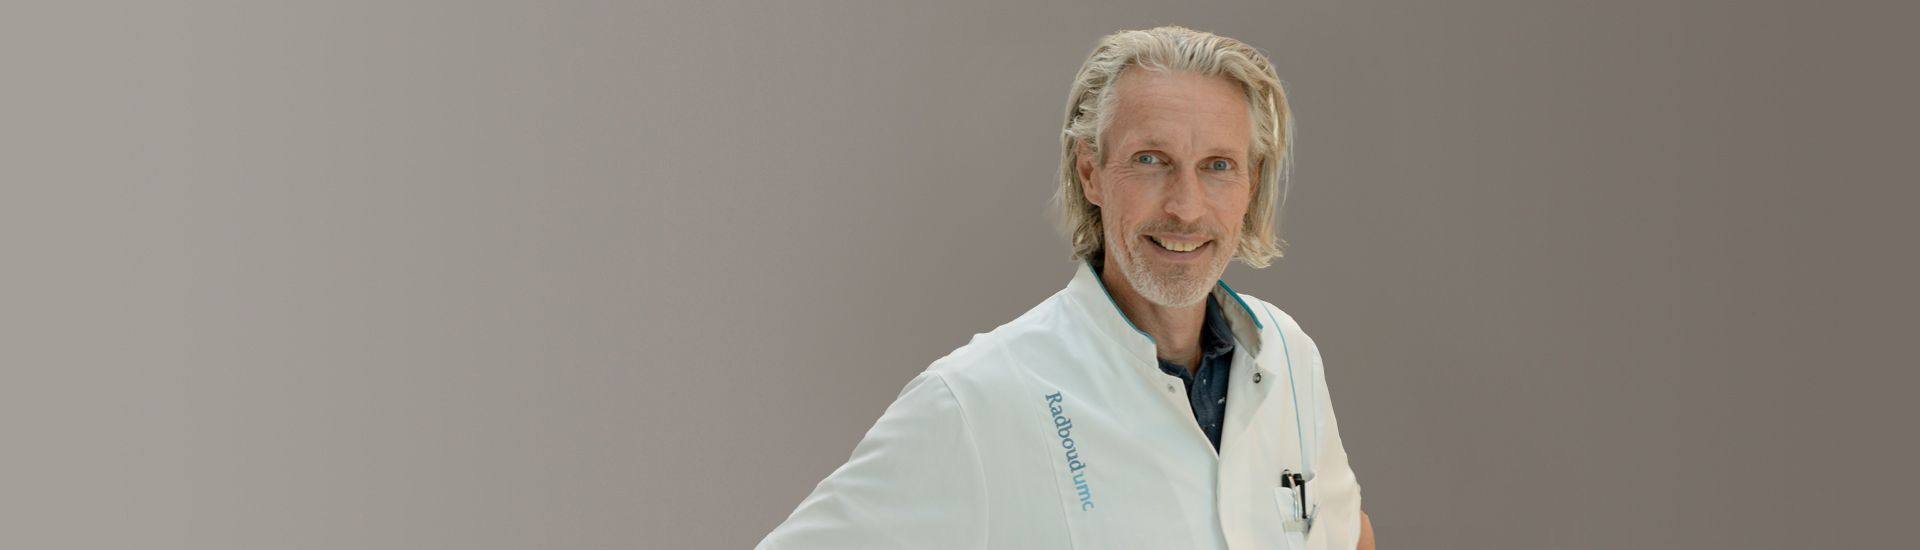 Parkinson expert Bas Bloem